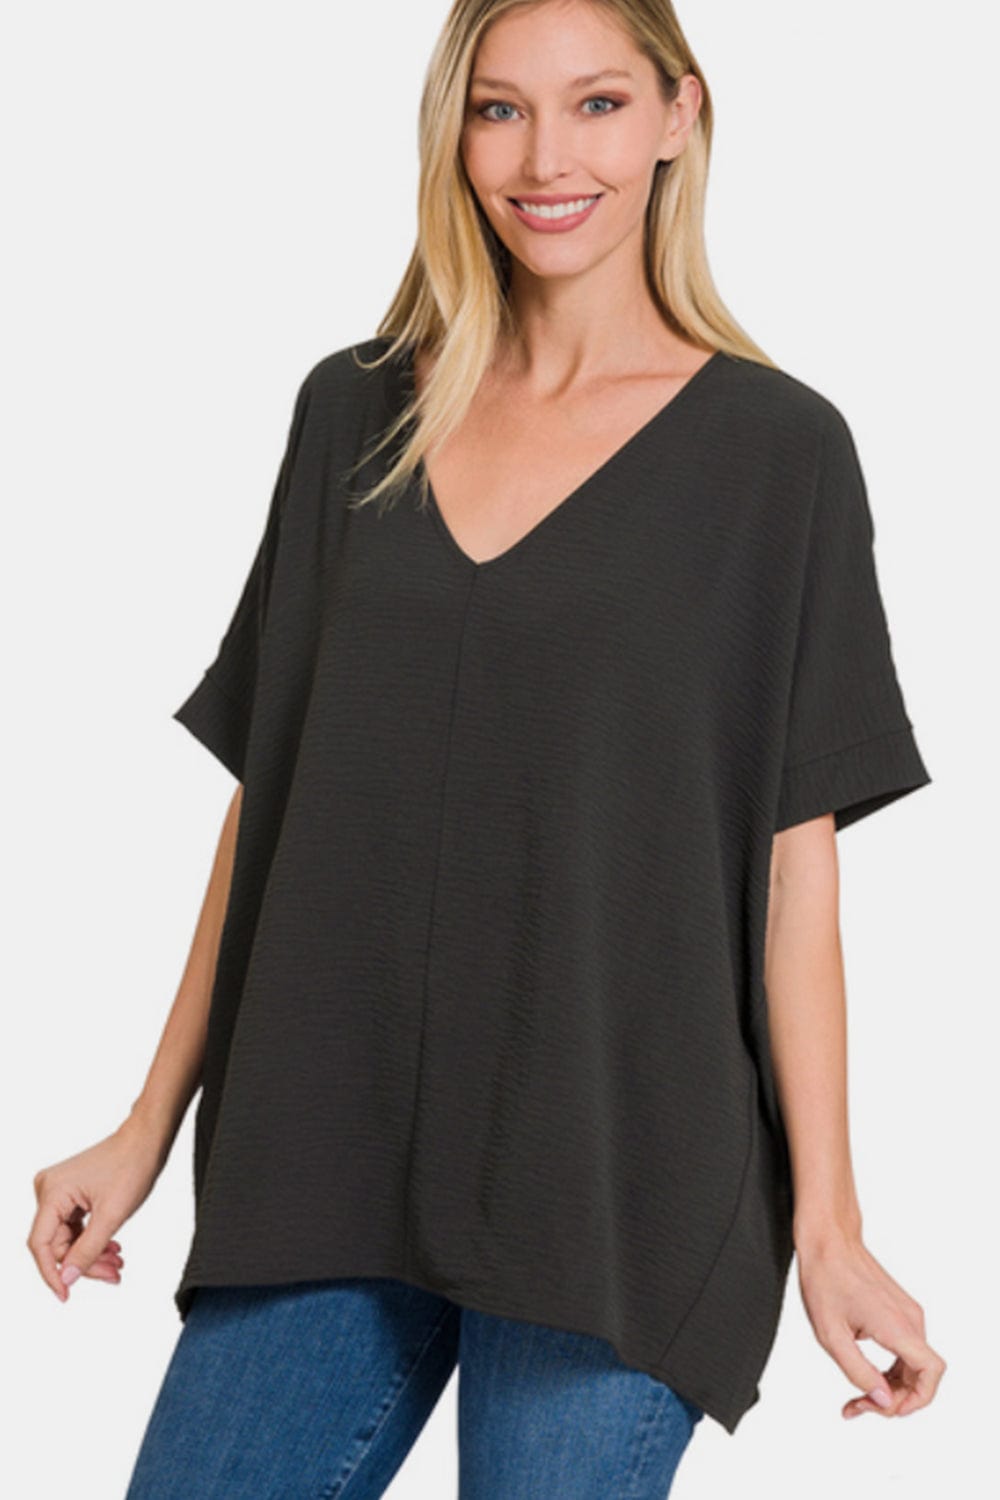 Zenana Full Size V-Neck Short Sleeve Top Top Trendsi BLACK / S